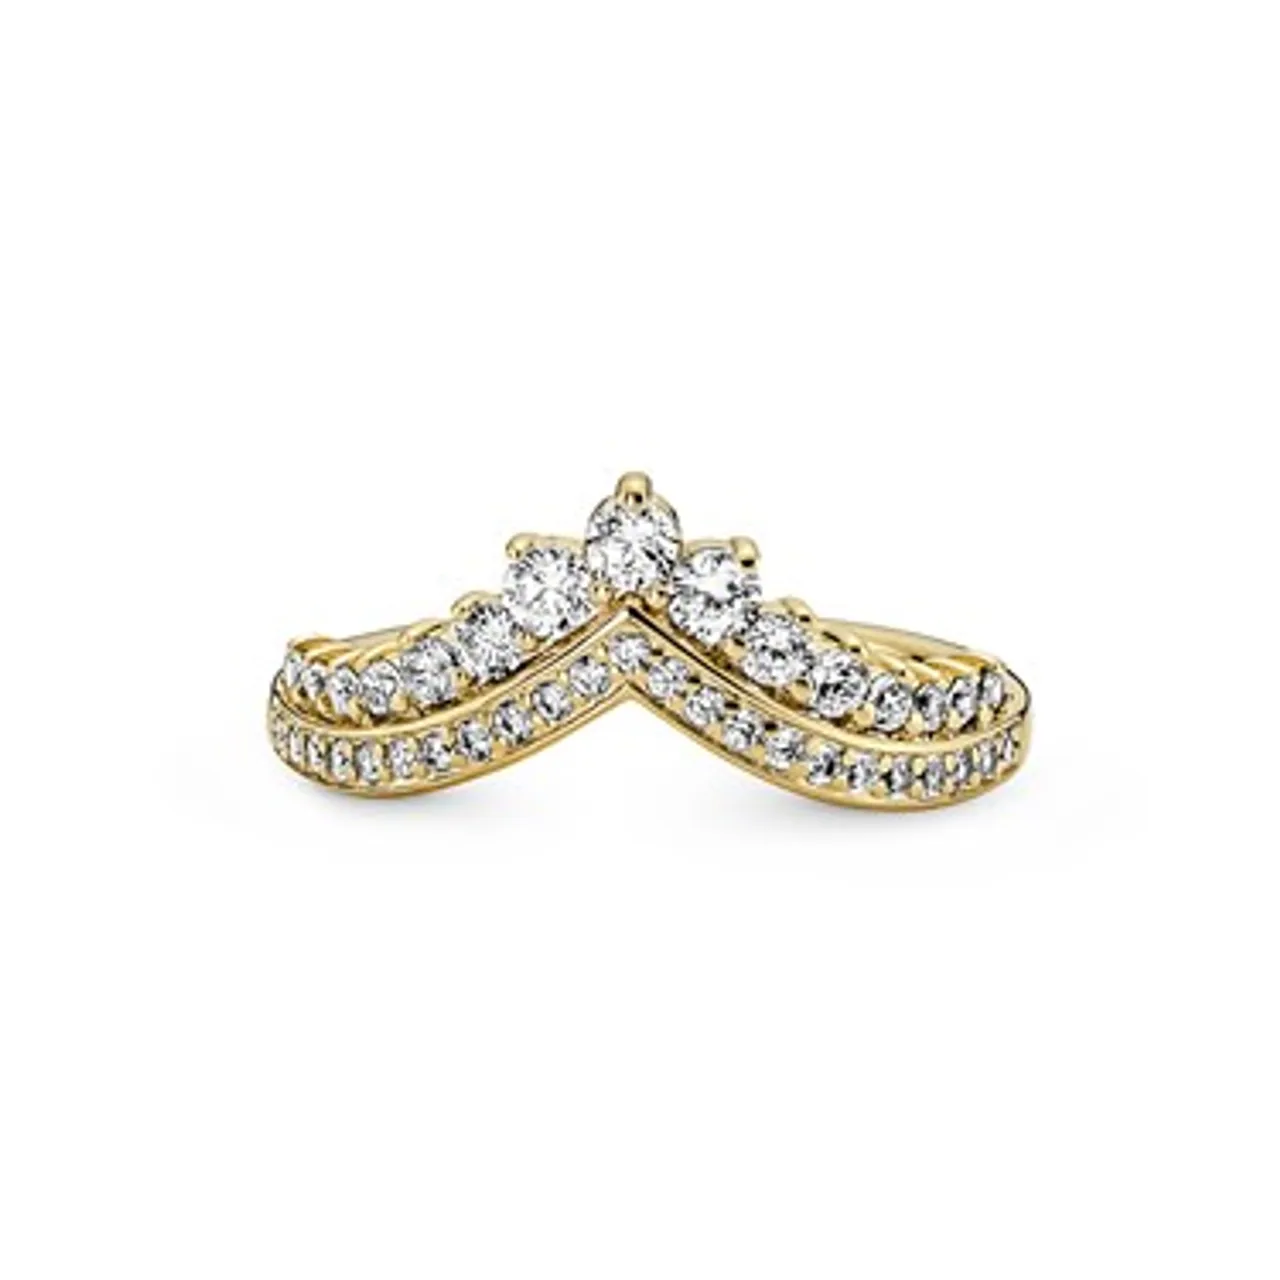 Pandora Gold Princess Wishbone Ring - Ring Size 56